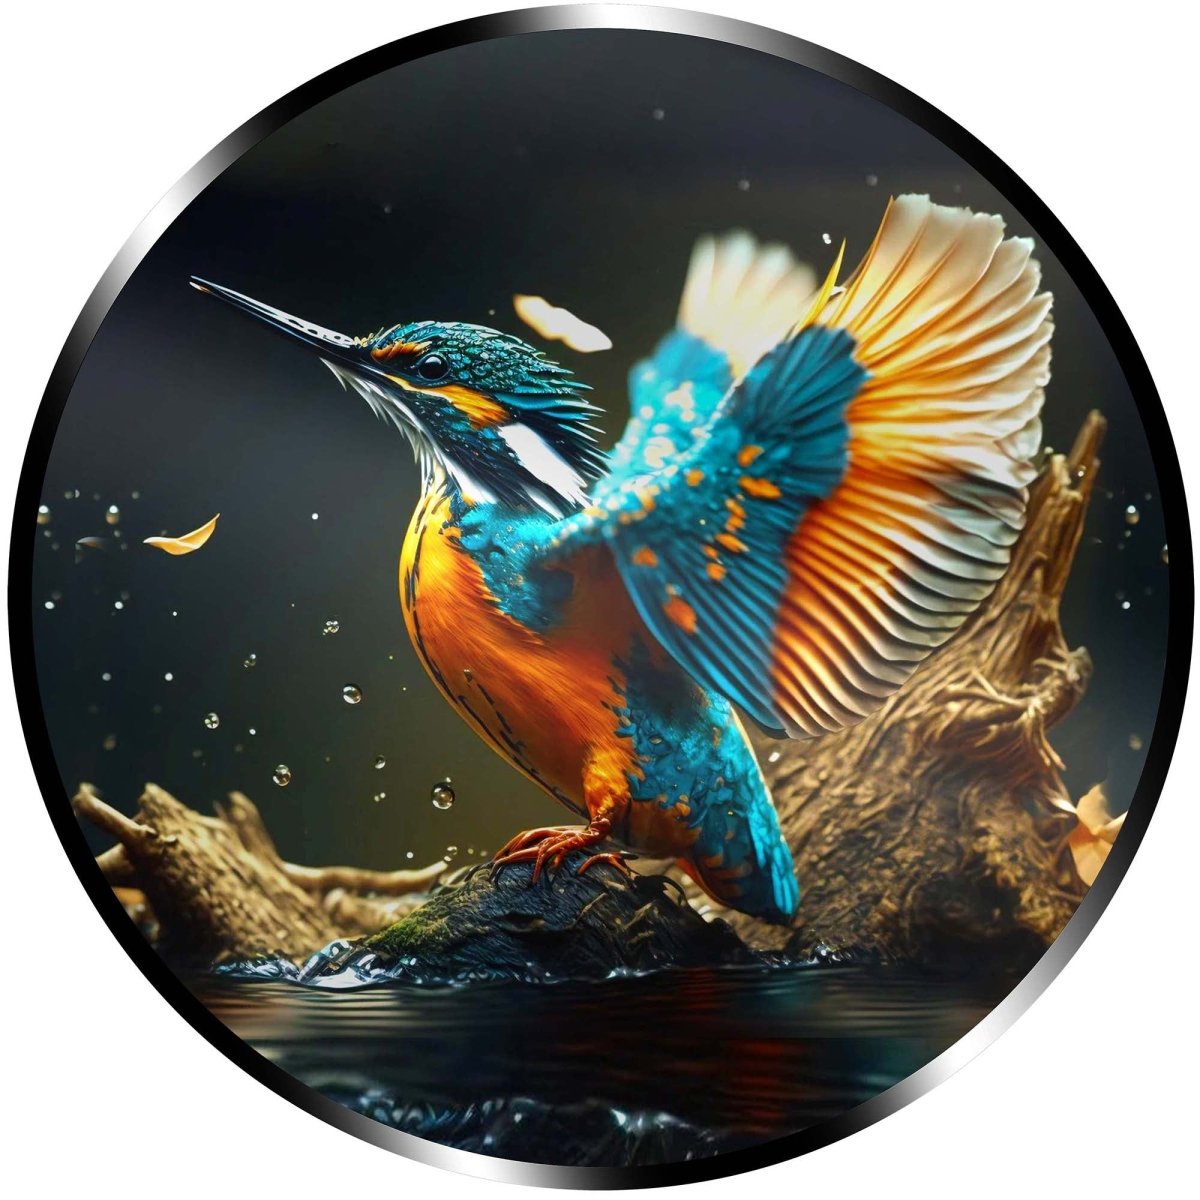 Illuminated Wall Art - Kingfisher in Flight - madaboutneon